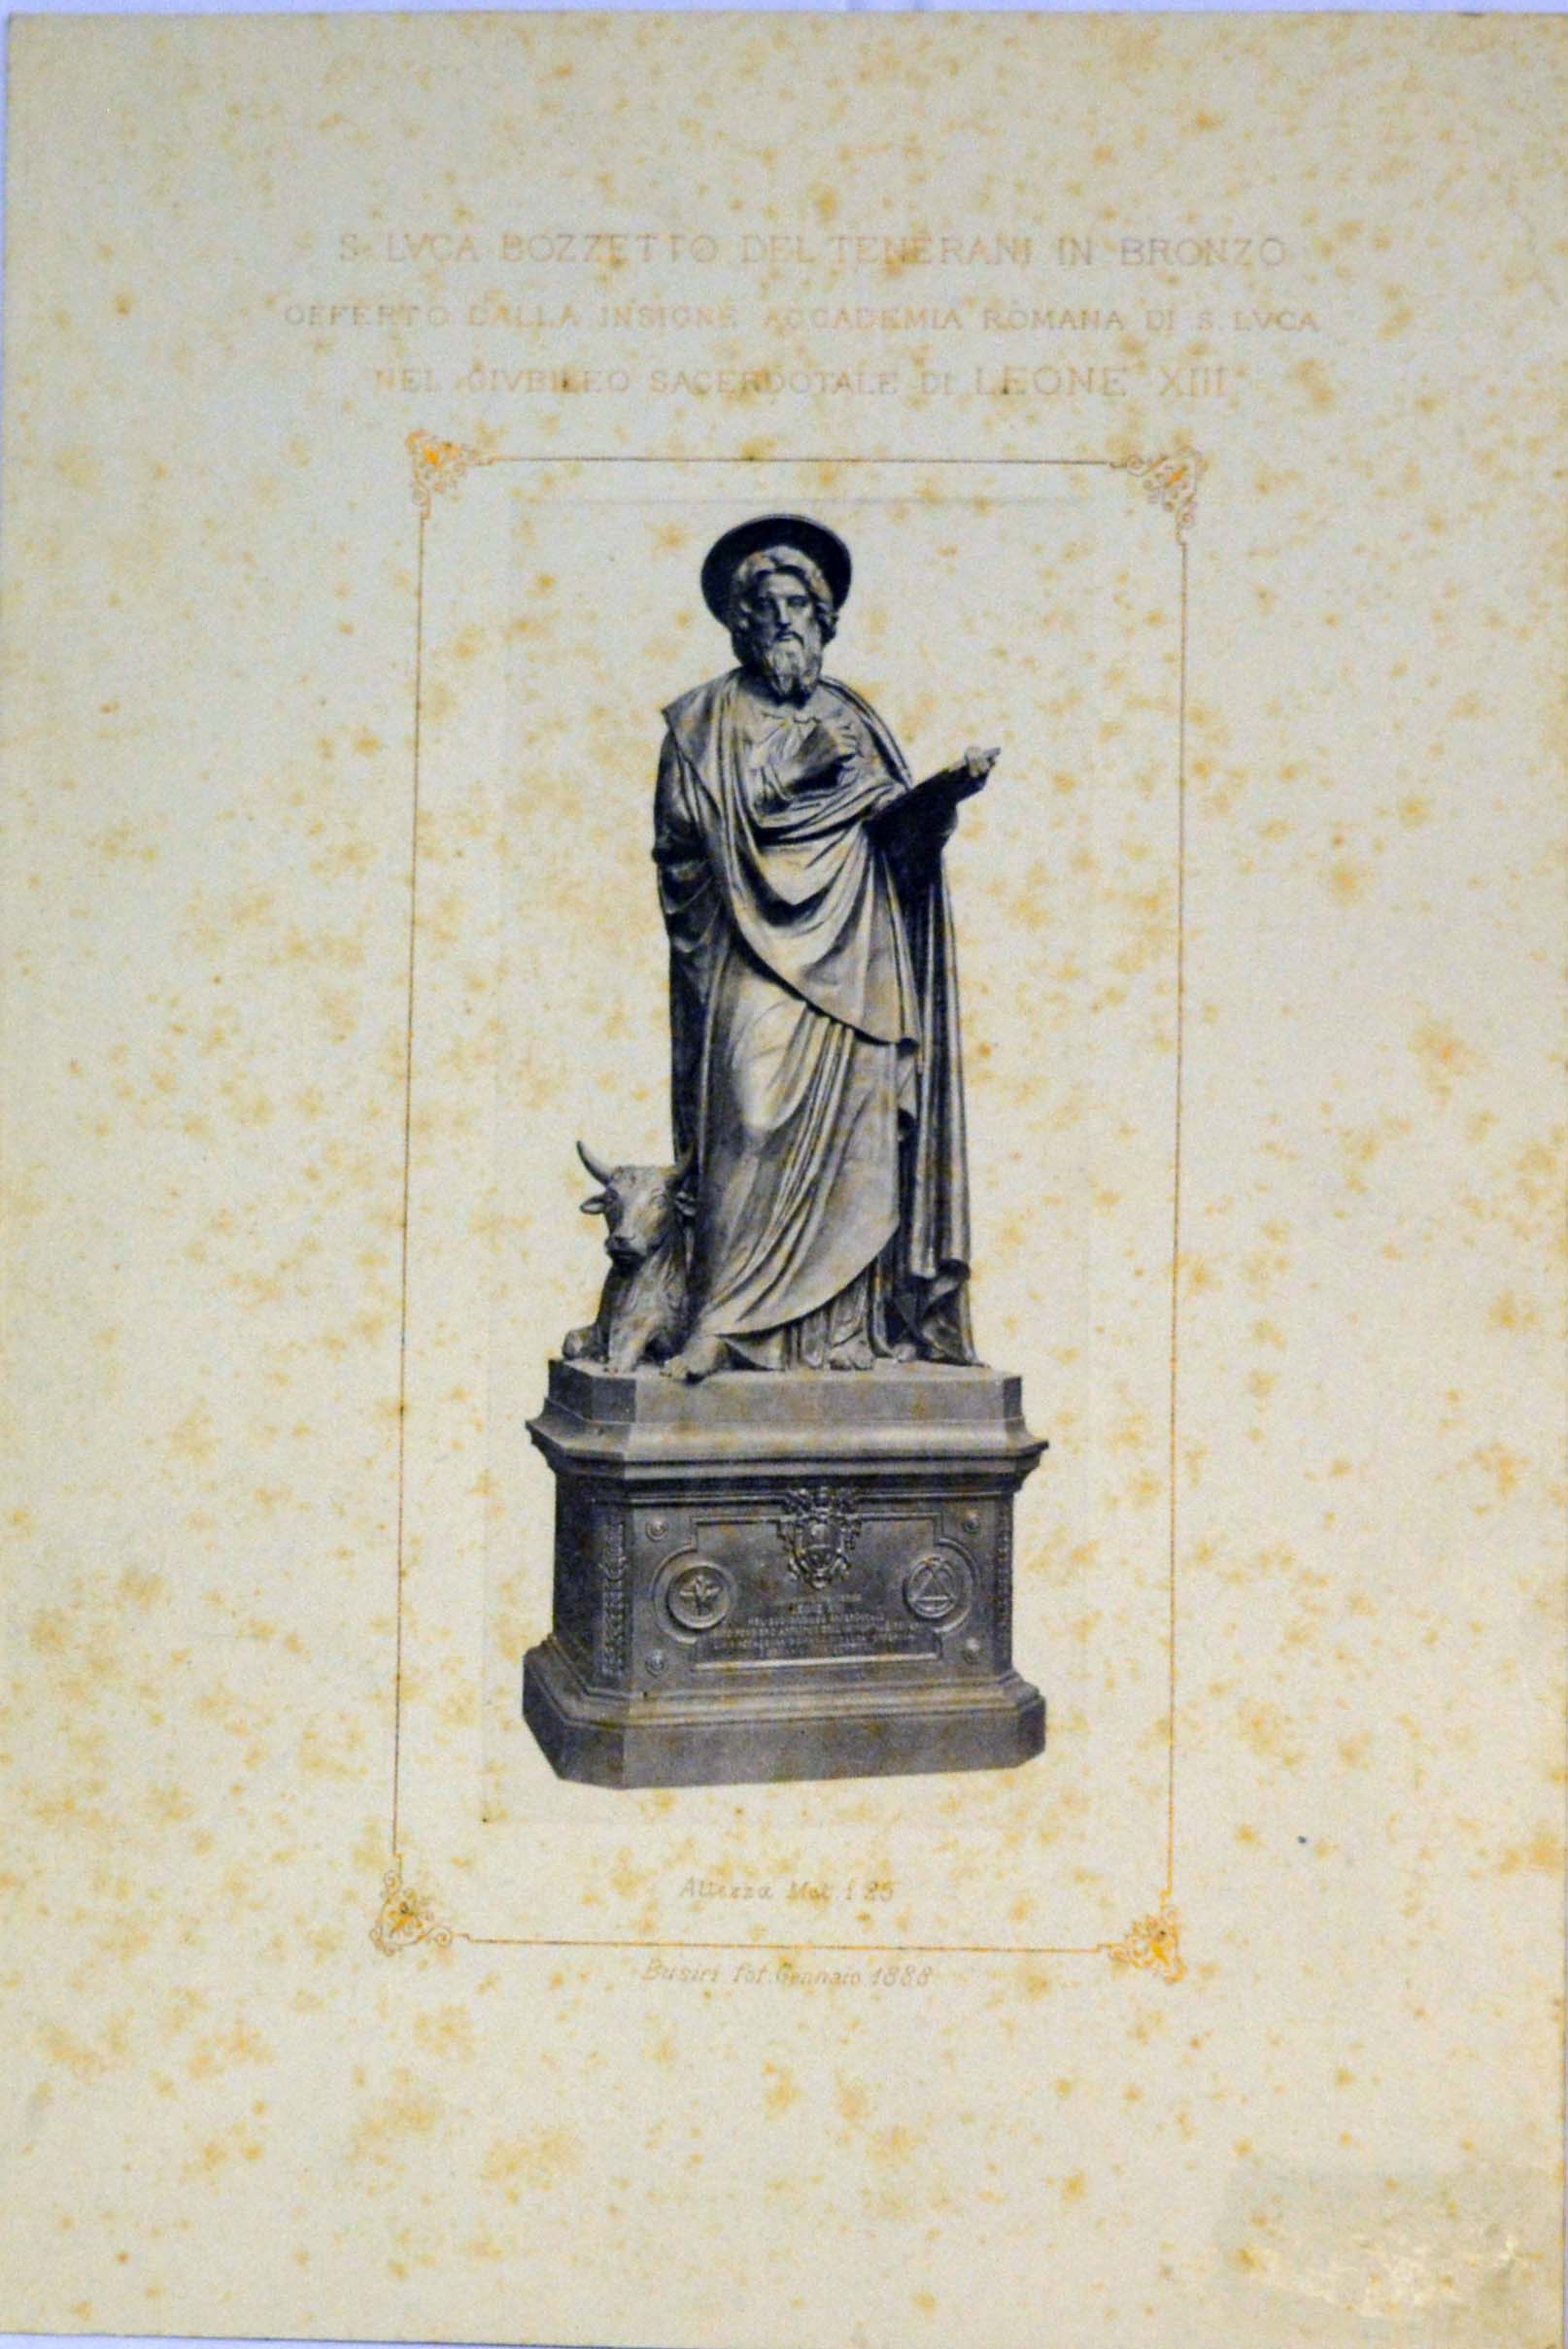 bozzetto in bronzo della statua di San Luca, opera di Pietro Tenerani, offerto dall'Accademia di San Luca nel Giubileo sacerdotale di Leone XIII (stampa) di Busiri (ultimo quarto sec. XIX)